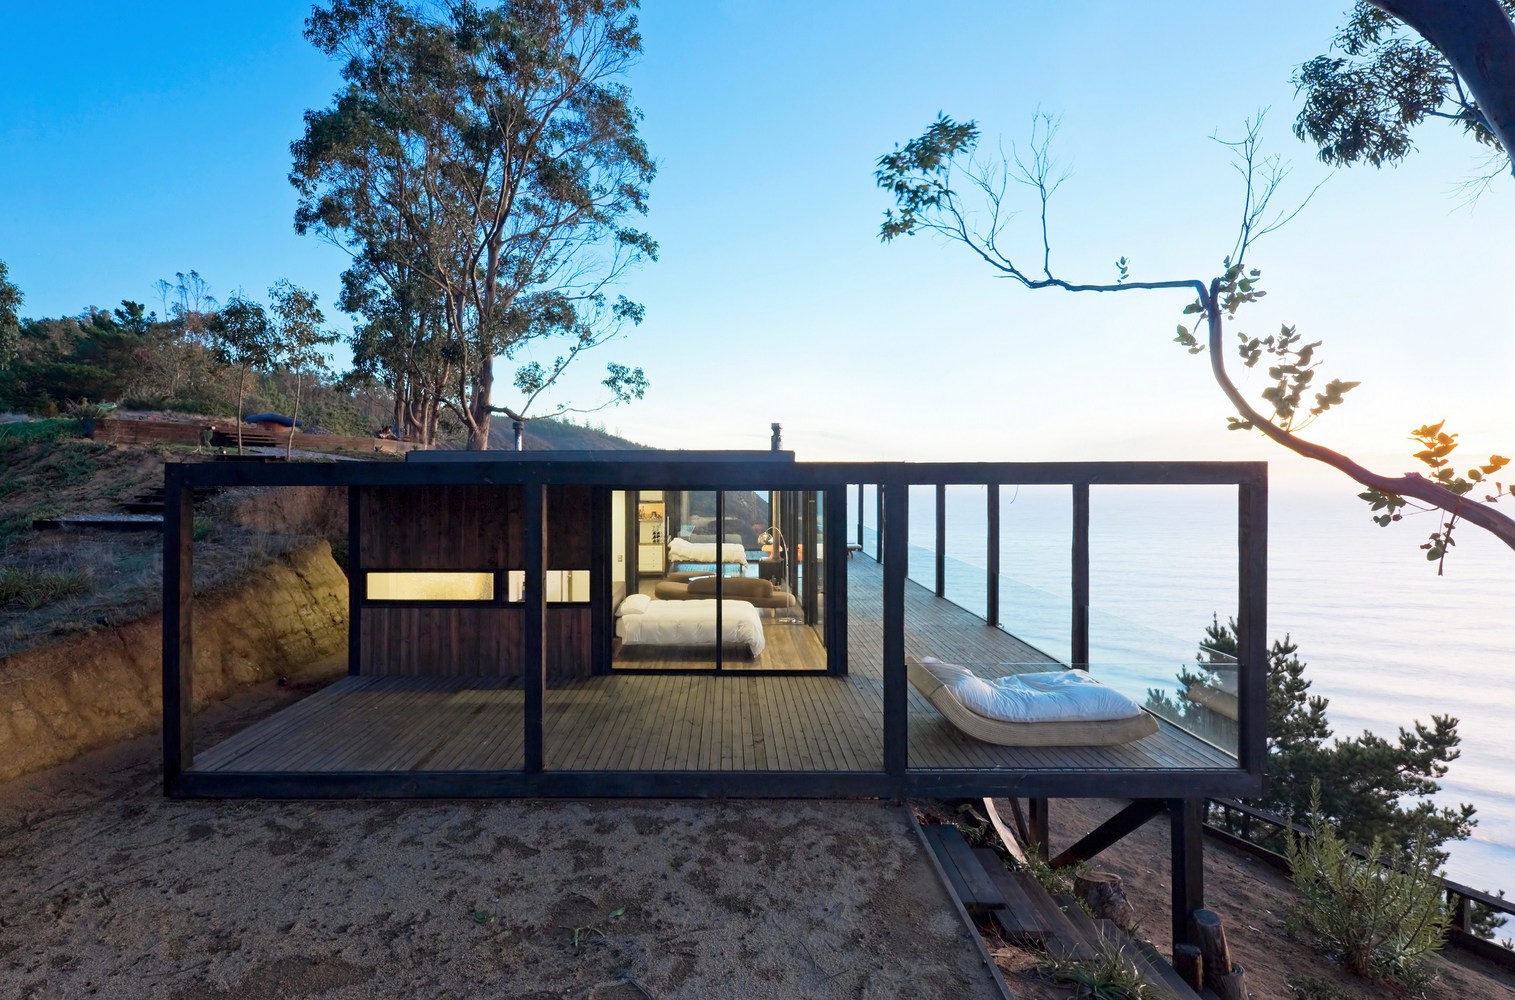 Indoor - Outdoor living : Modern Deck Design Inspiration